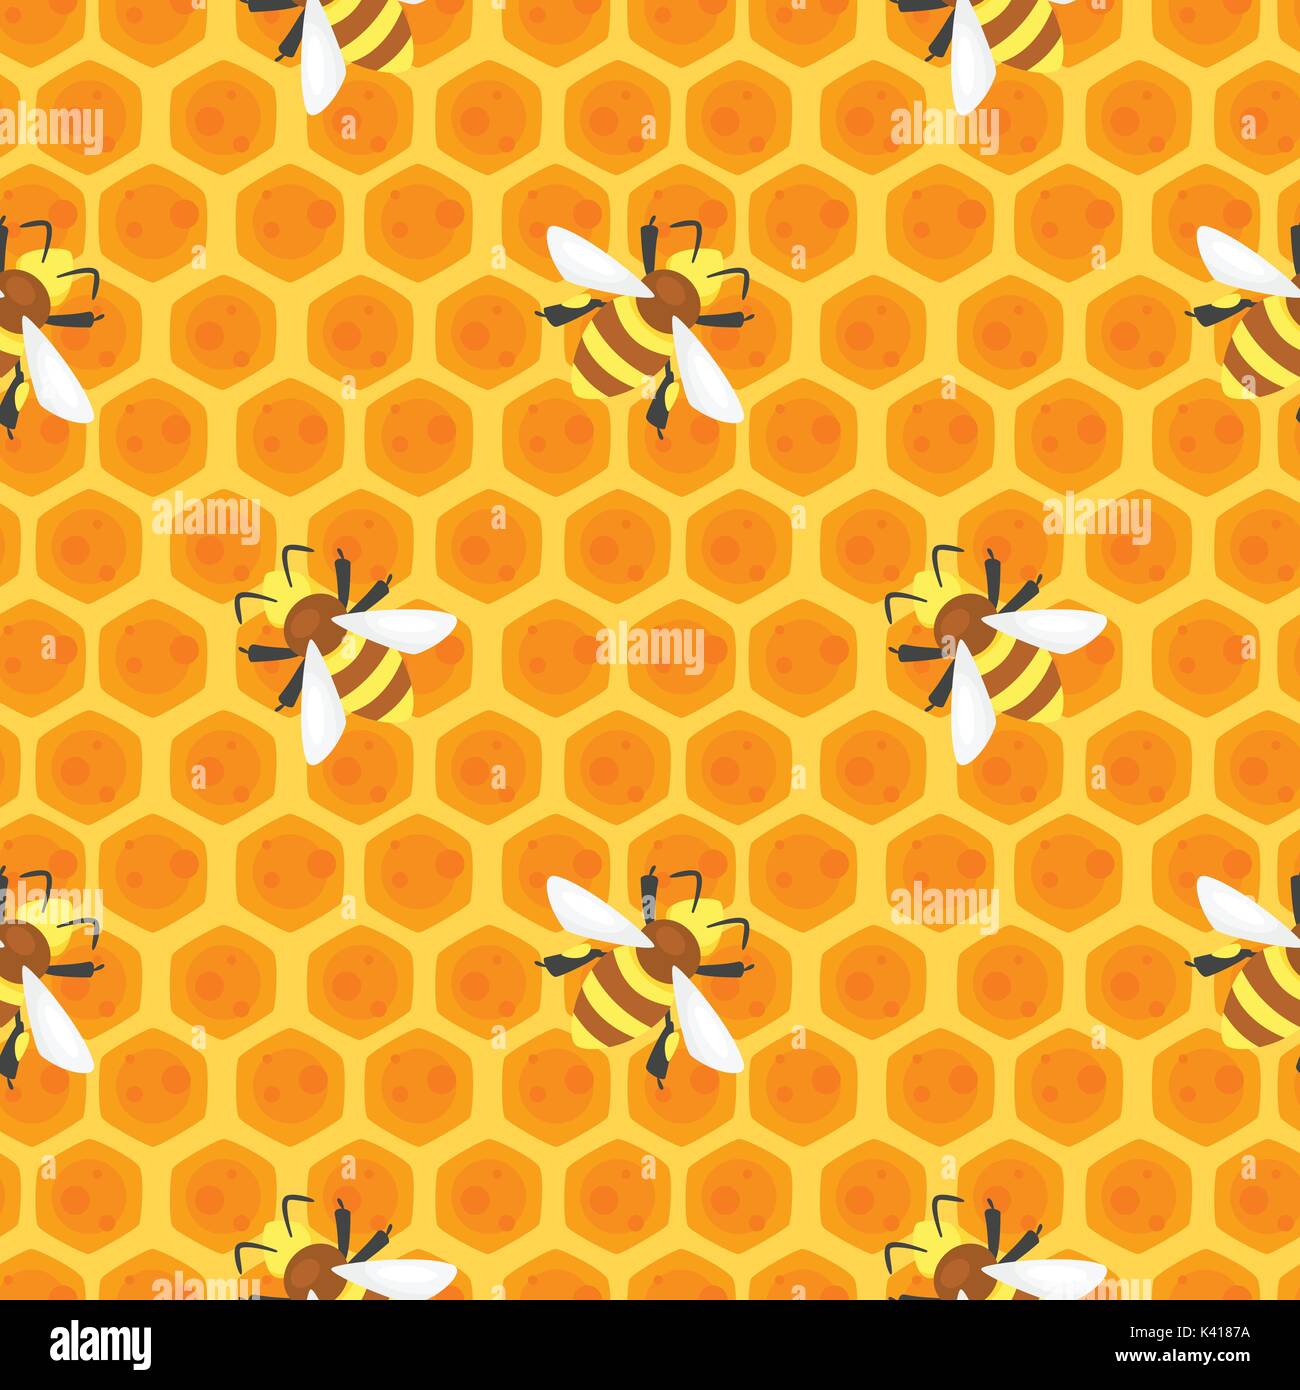 Vektor Cartoon Stil nahtlose Muster mit Bienen auf Honig Waben. Stock Vektor